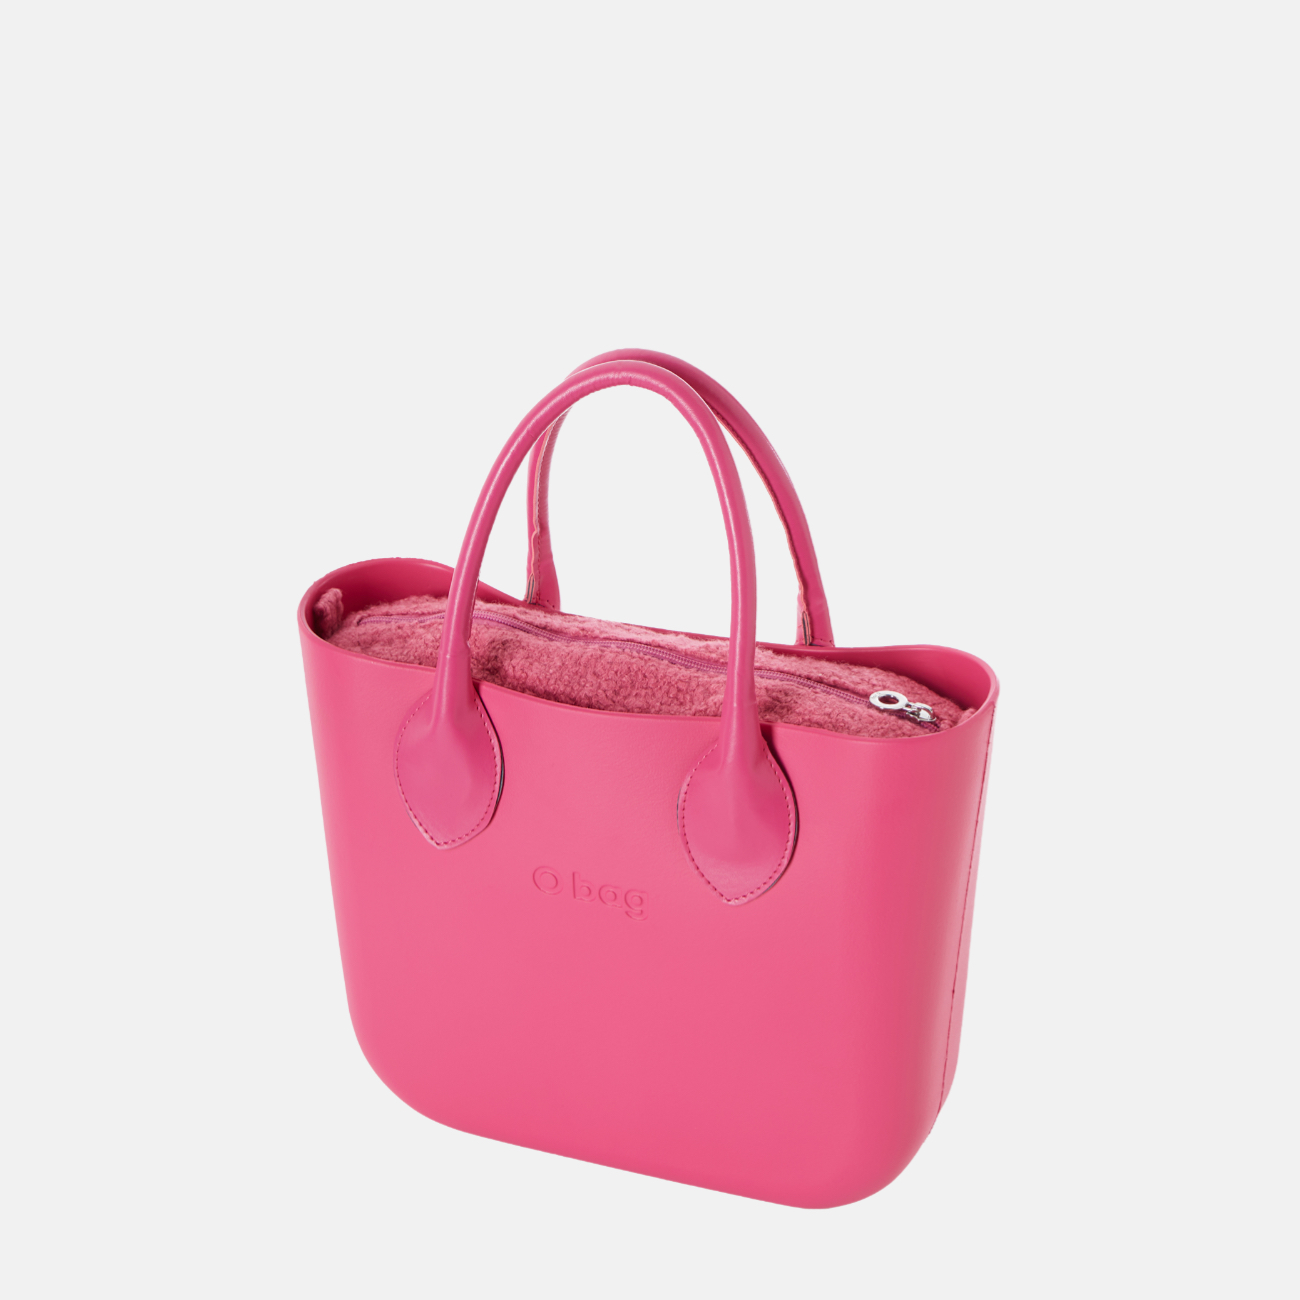 O bag mini fuşya pembe tasarım çanta